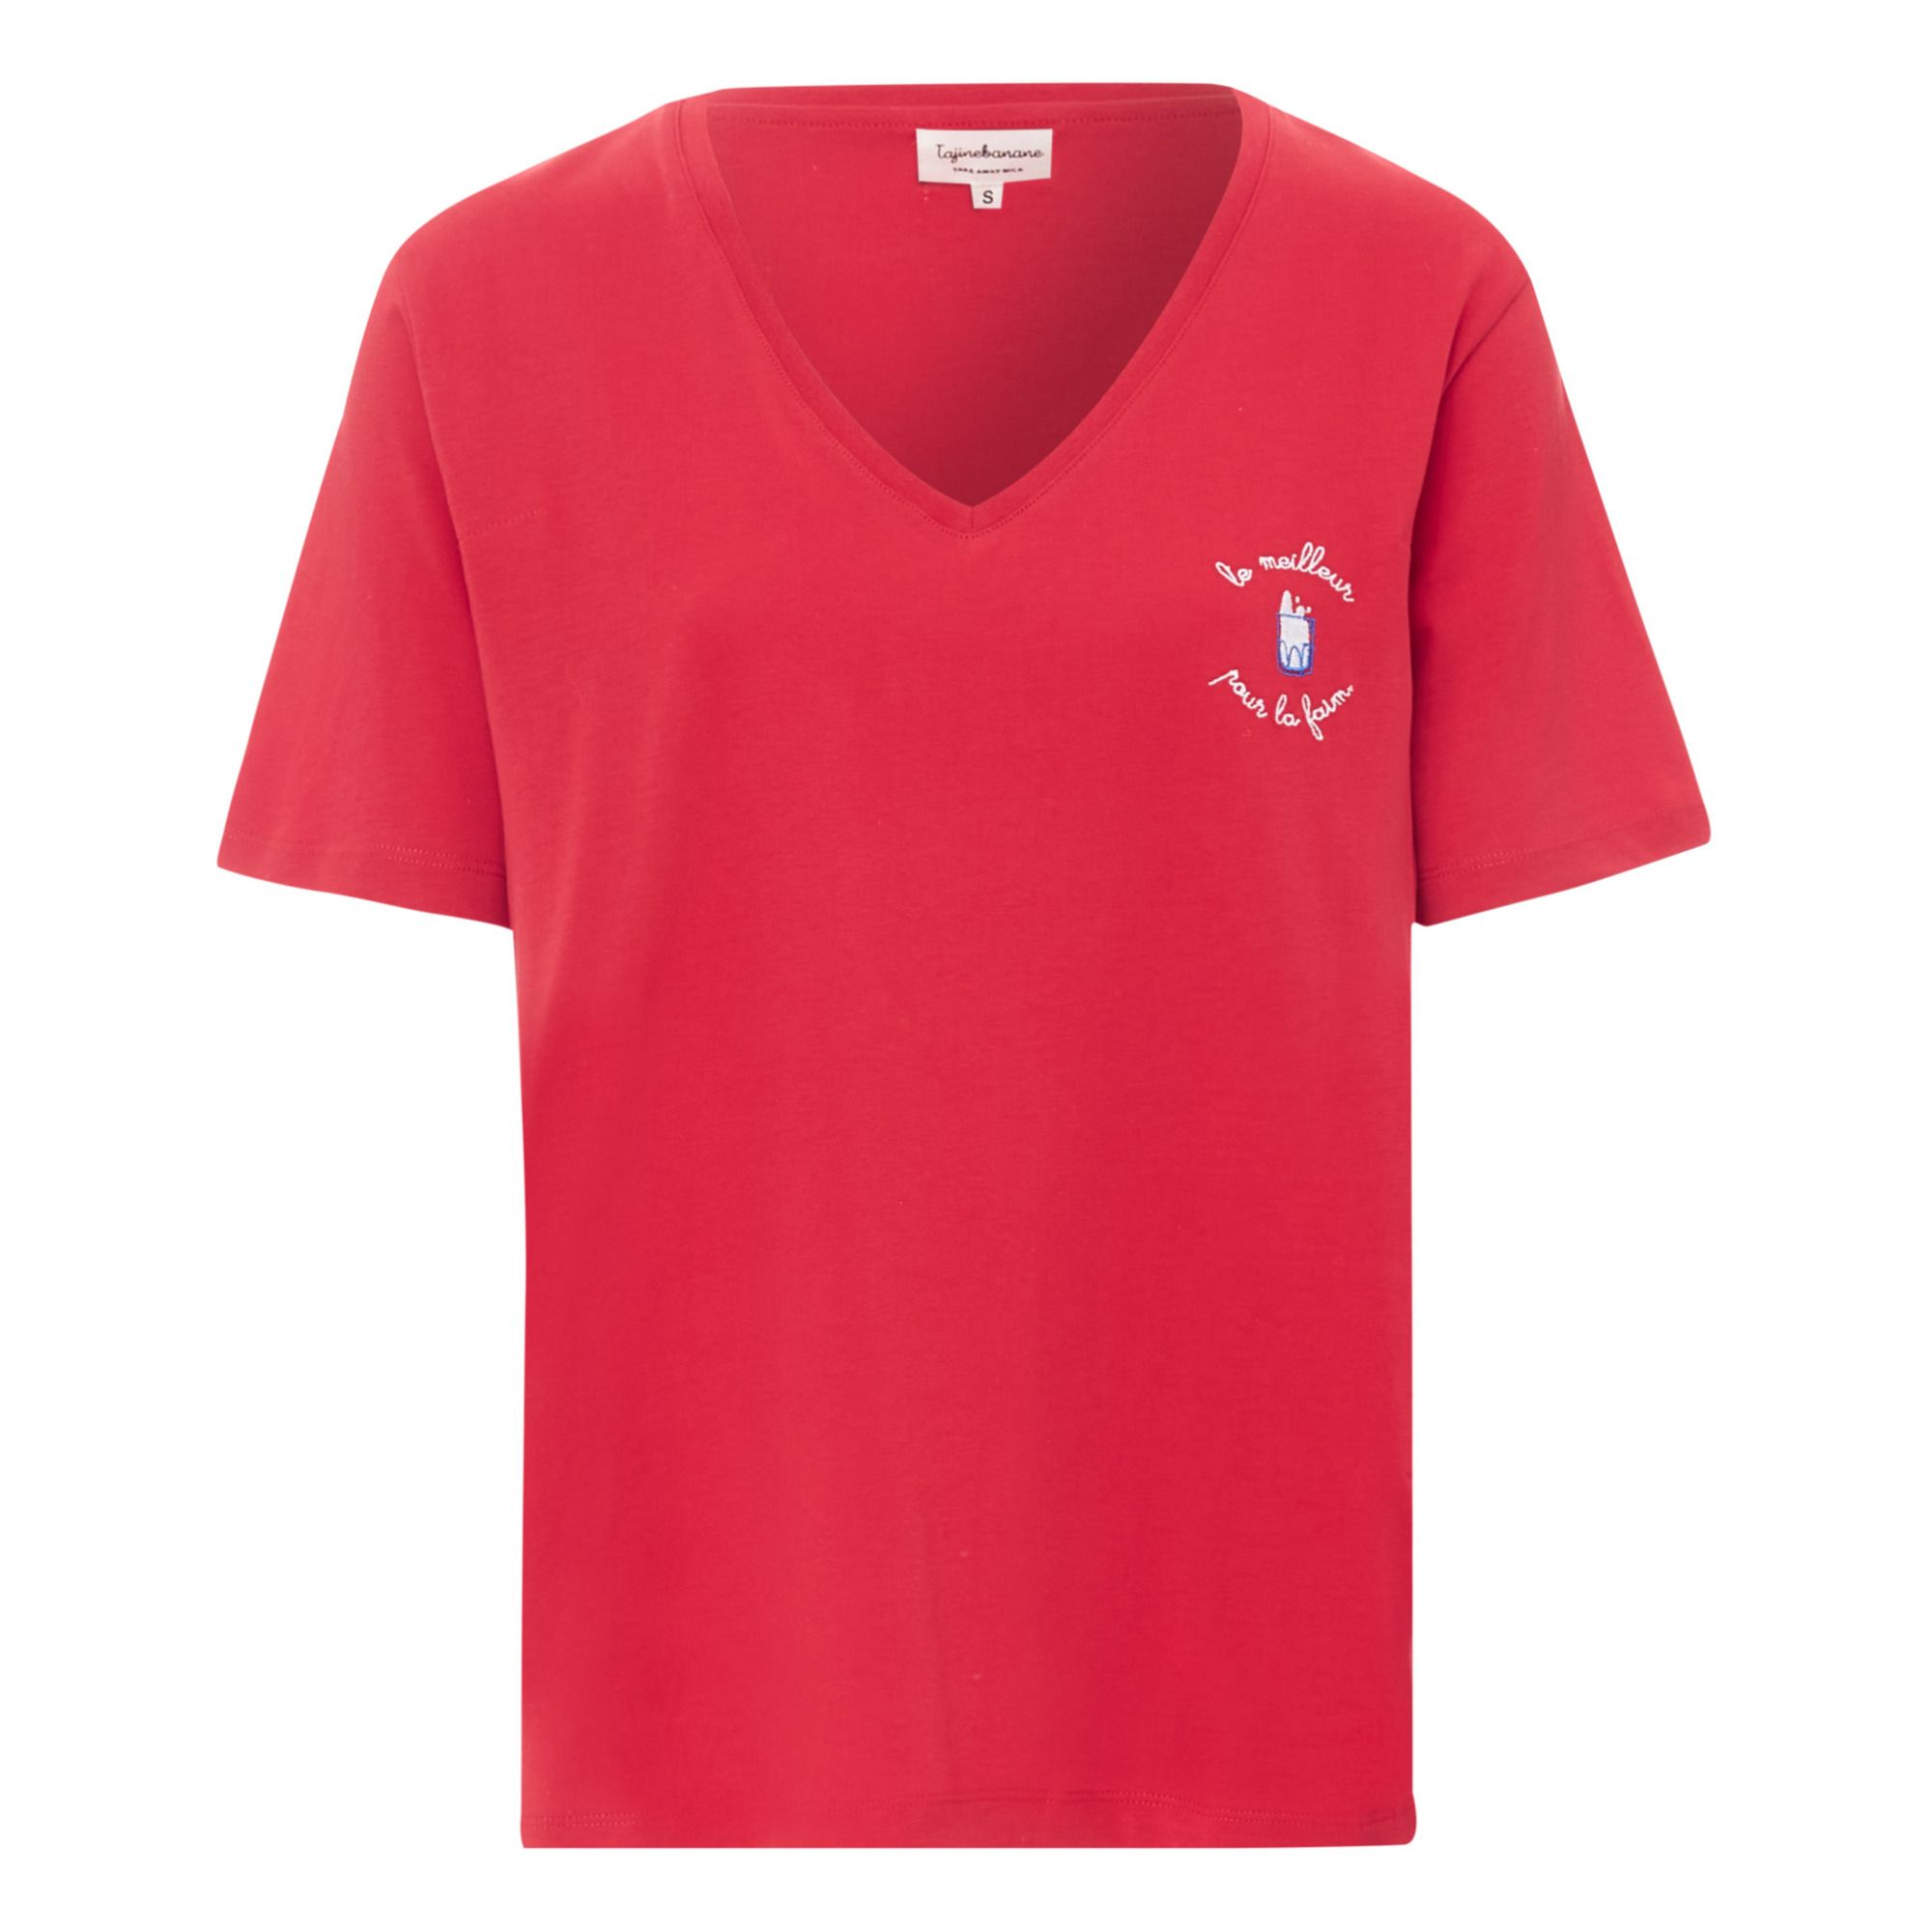 Le Meilleur Pour La Faim Breastfeeding T-shirt Red- Product image n°0